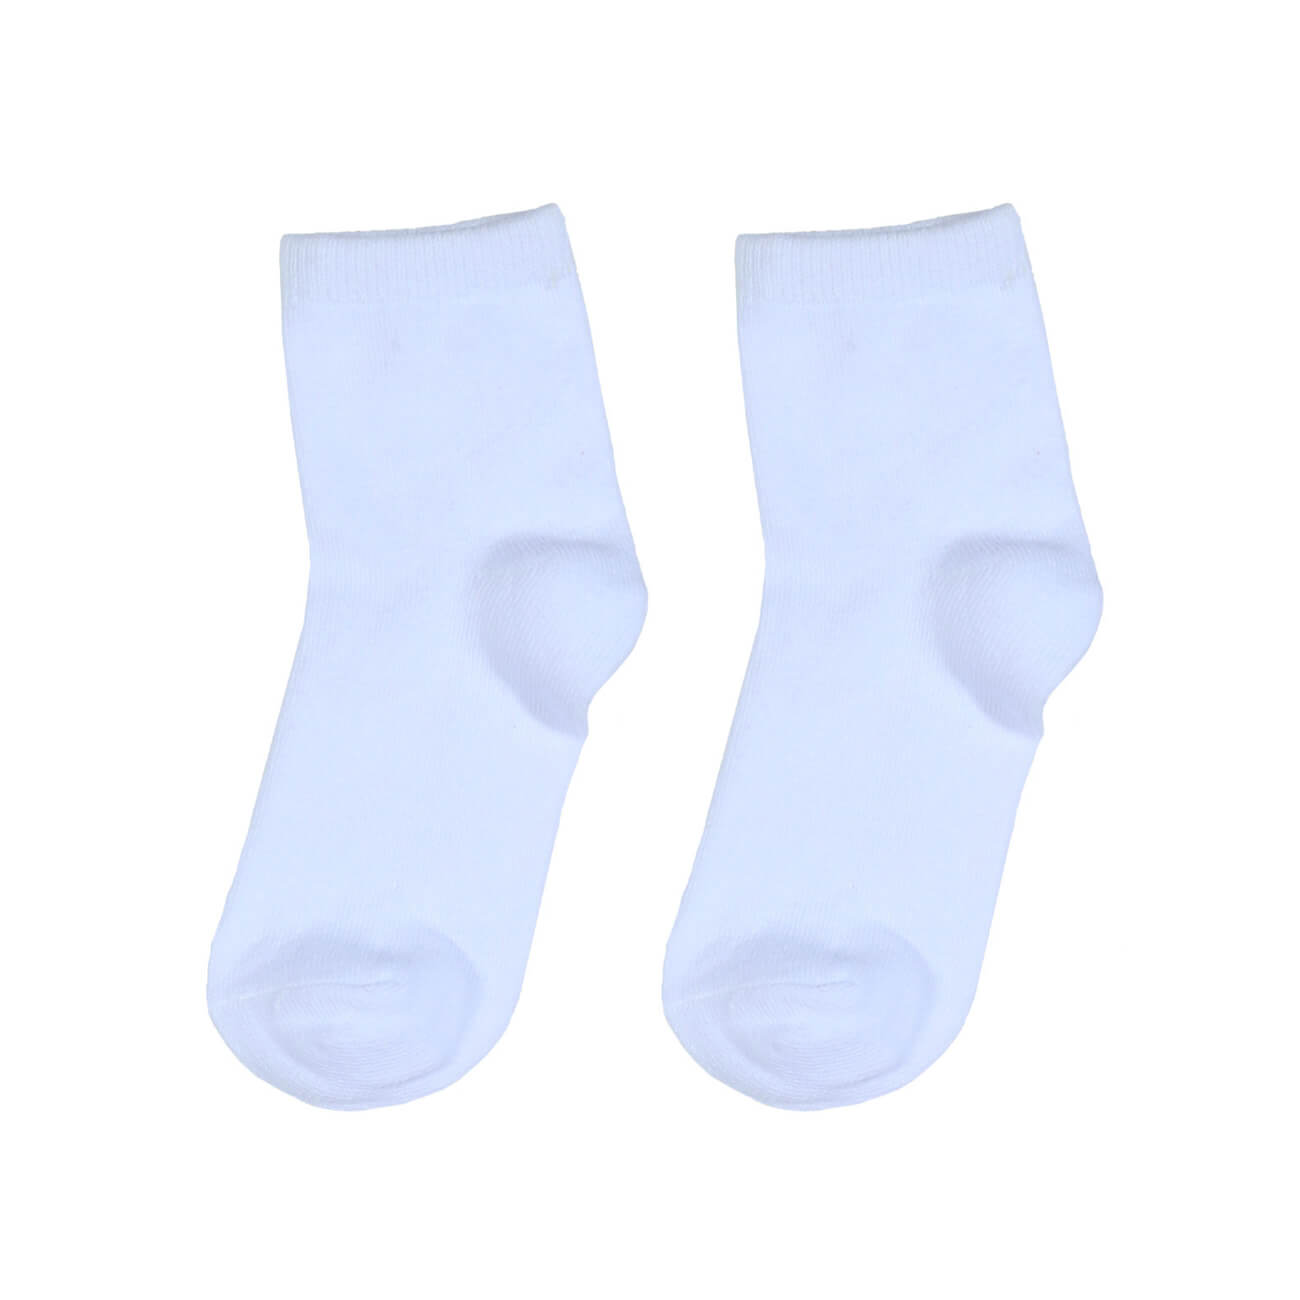 Носки детские, р. 23-26, хлопок/полиэстер, белые, Basic носки следки мужские р 43 46 хлопок полиэстер белые basic